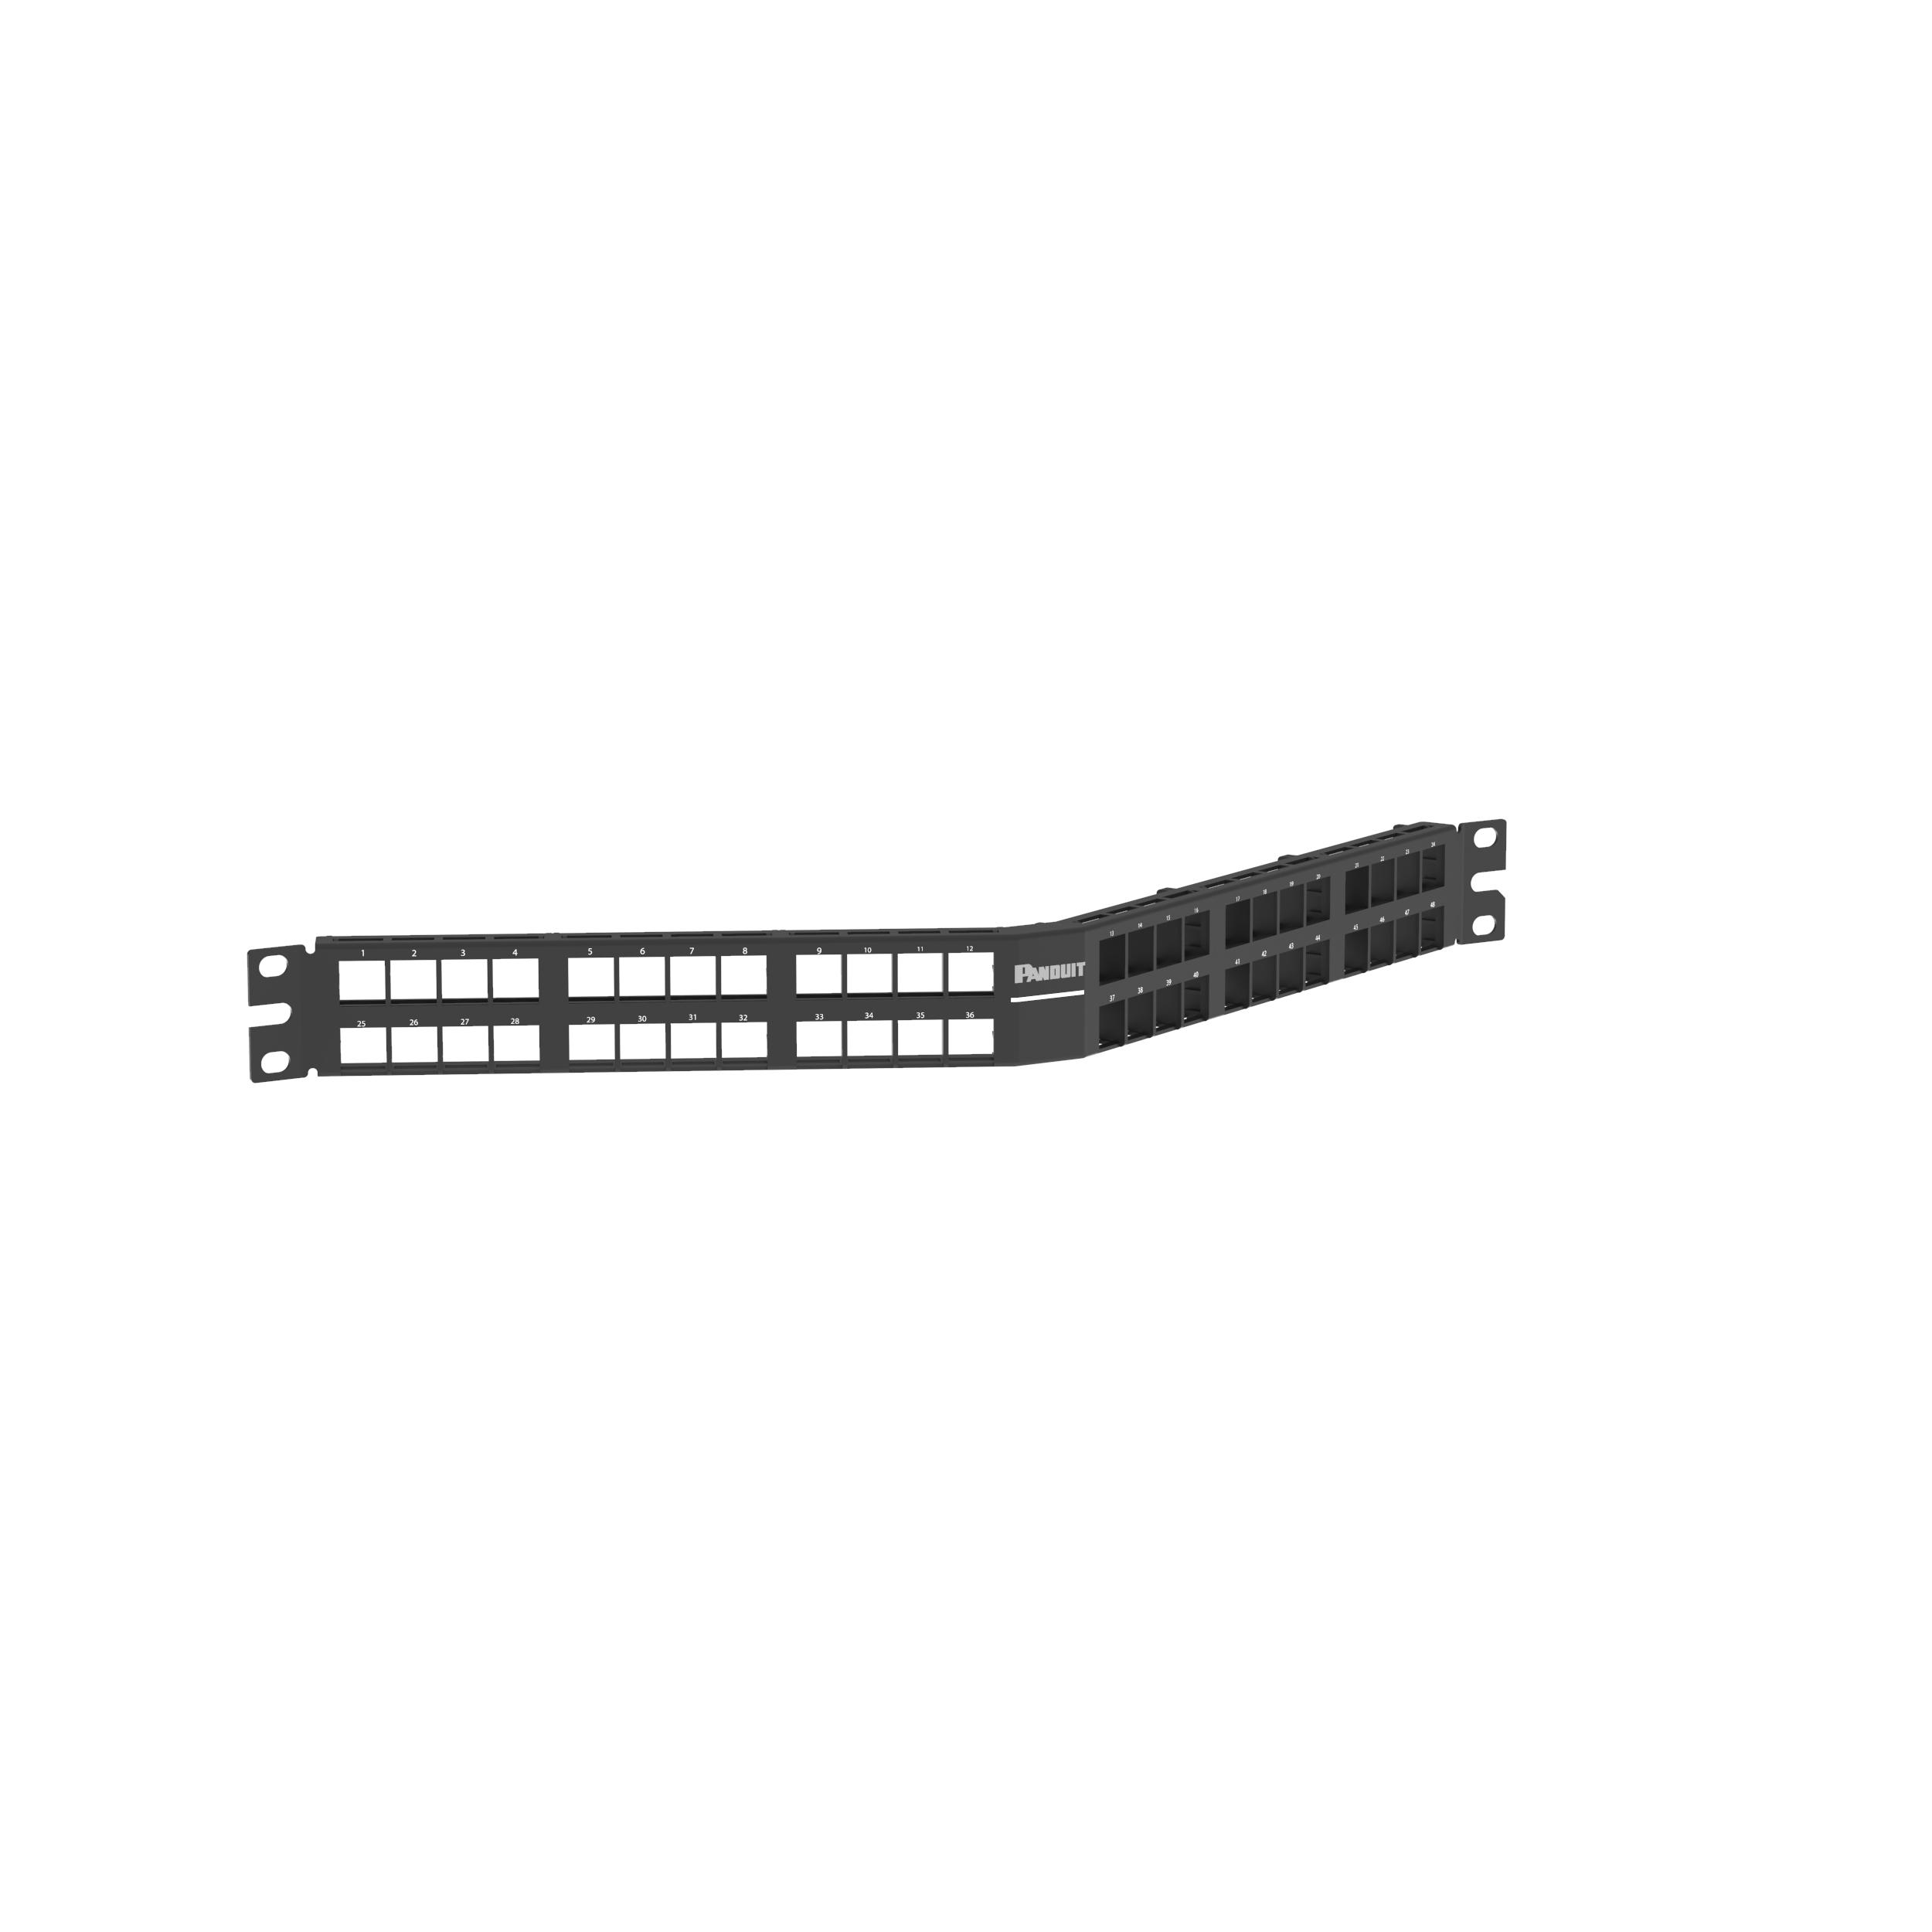 Panduit NKPPA48HDY NetKey® Angled Patch Panel, 48 port, 2 RU, BL